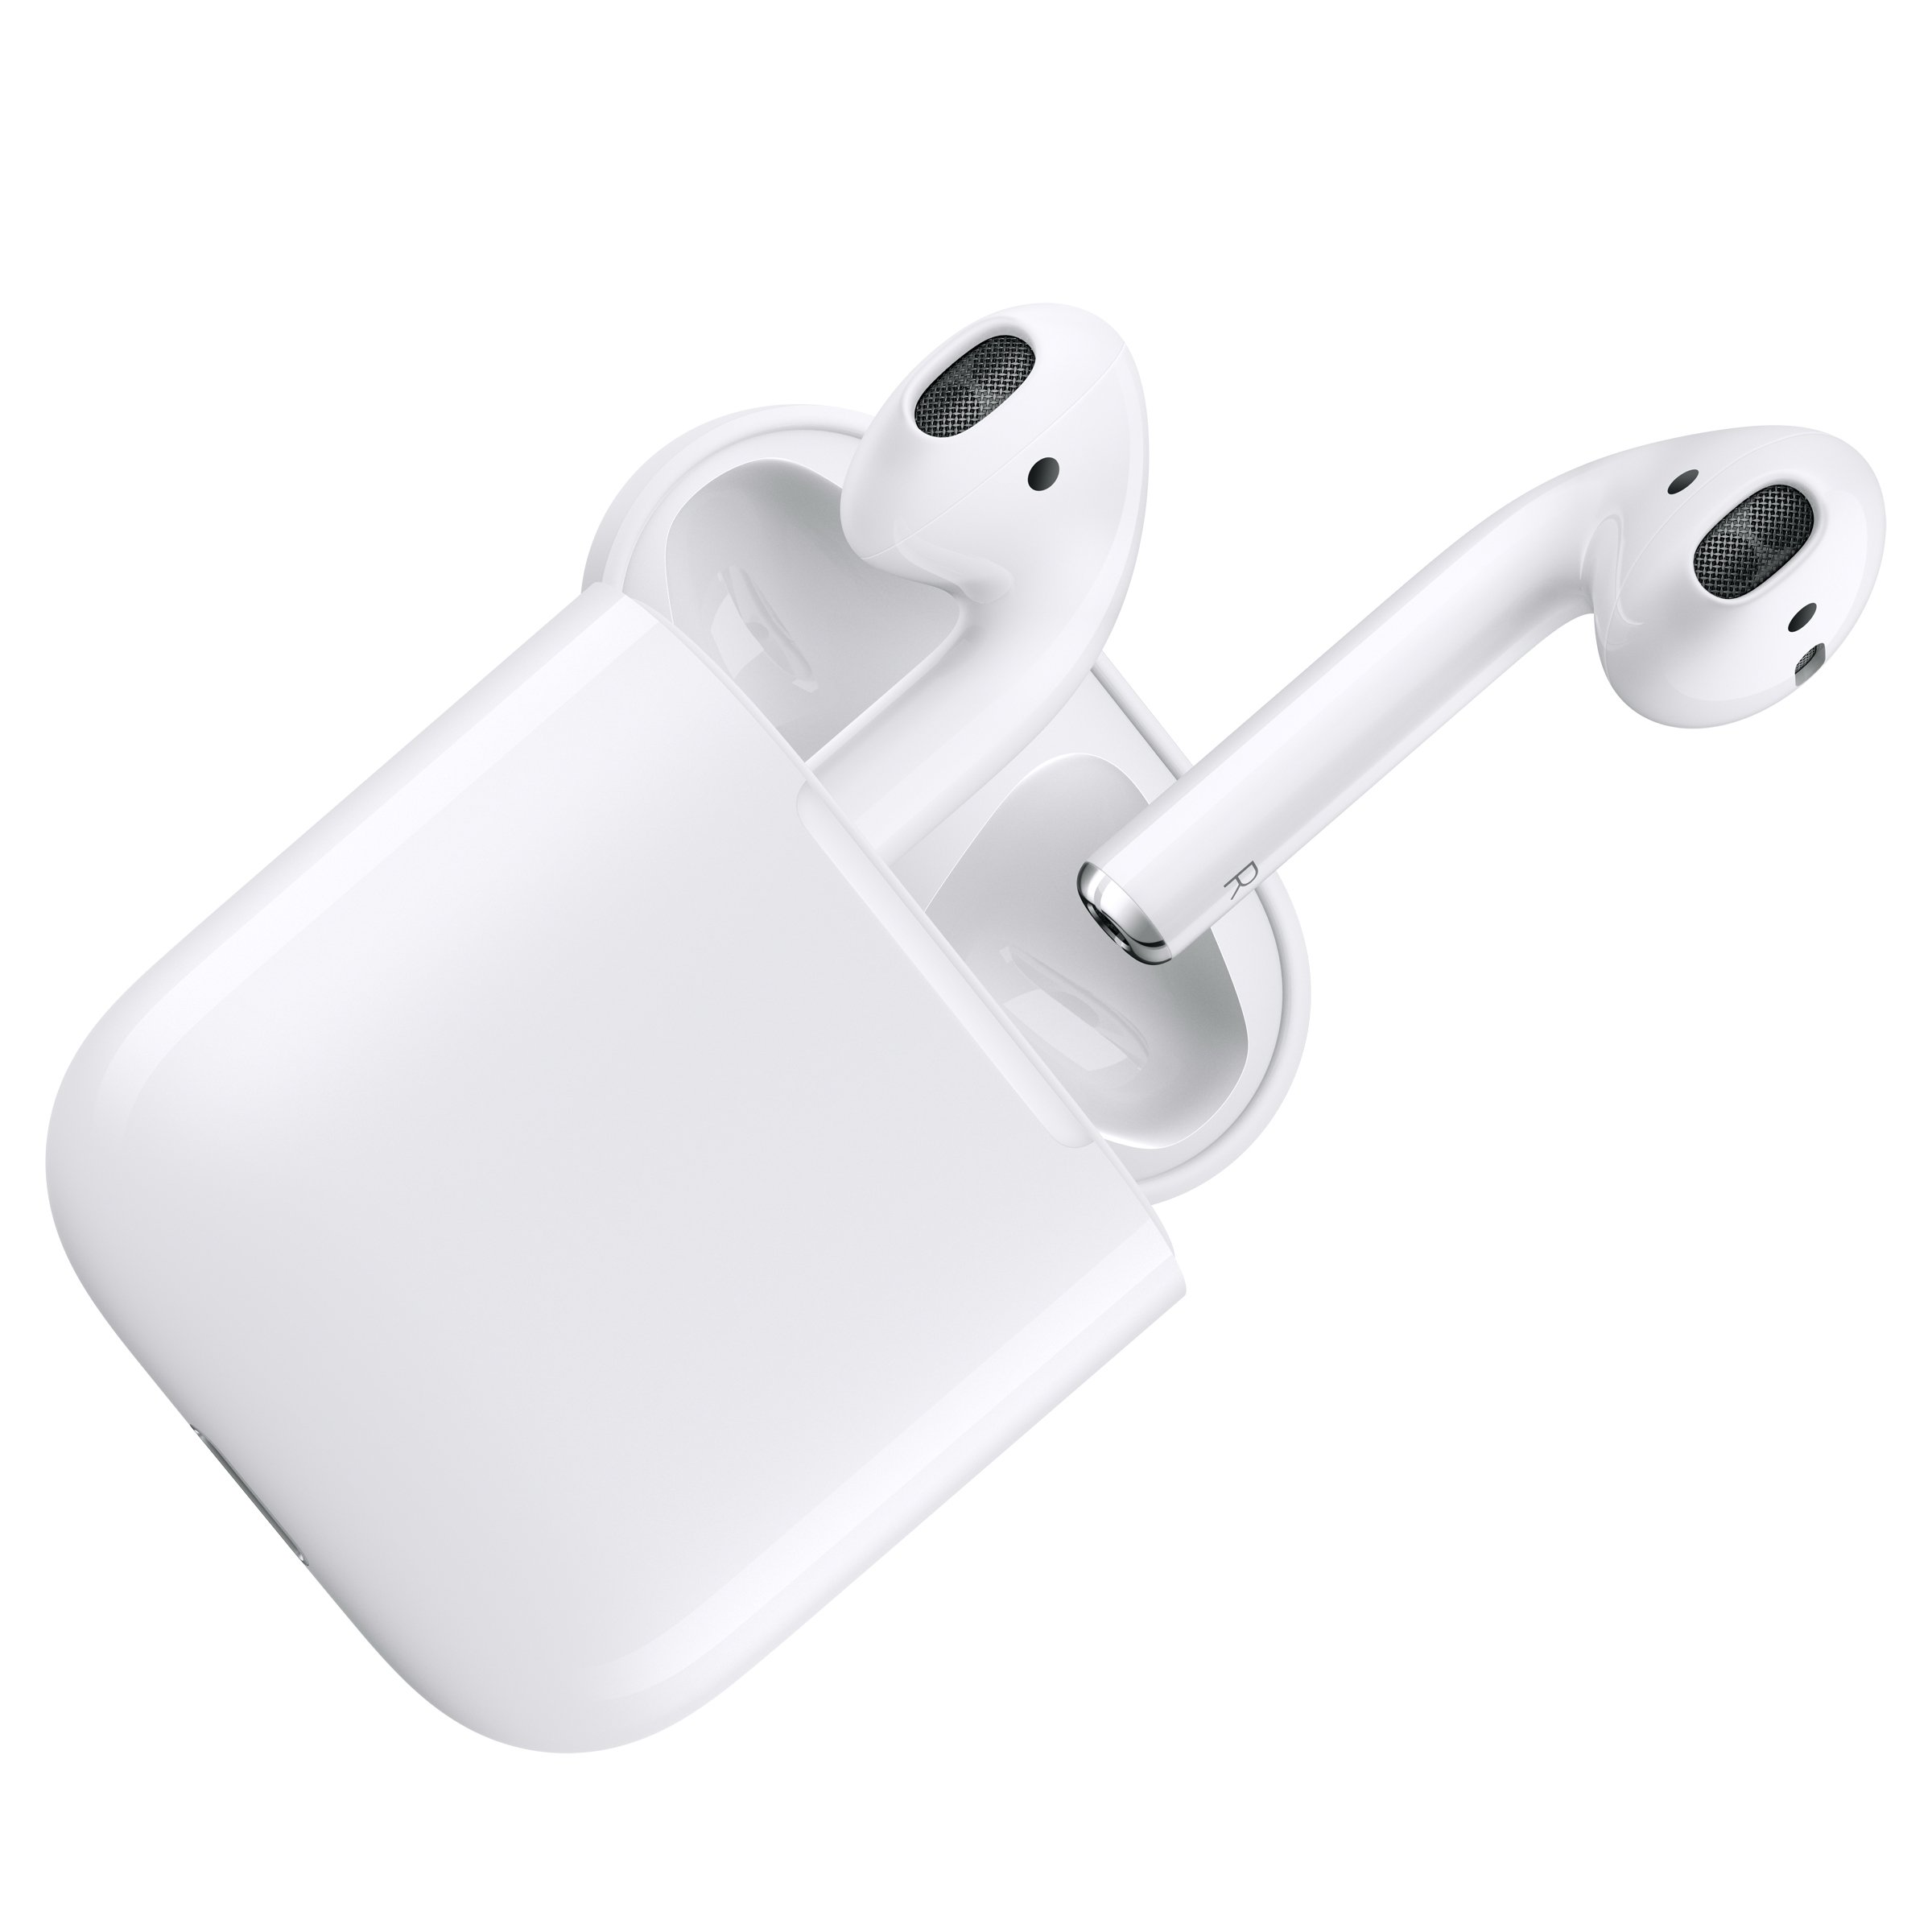 Η Apple θα χρεώνει 69$ για την αντικατάσταση ενός χαμένου AirPod